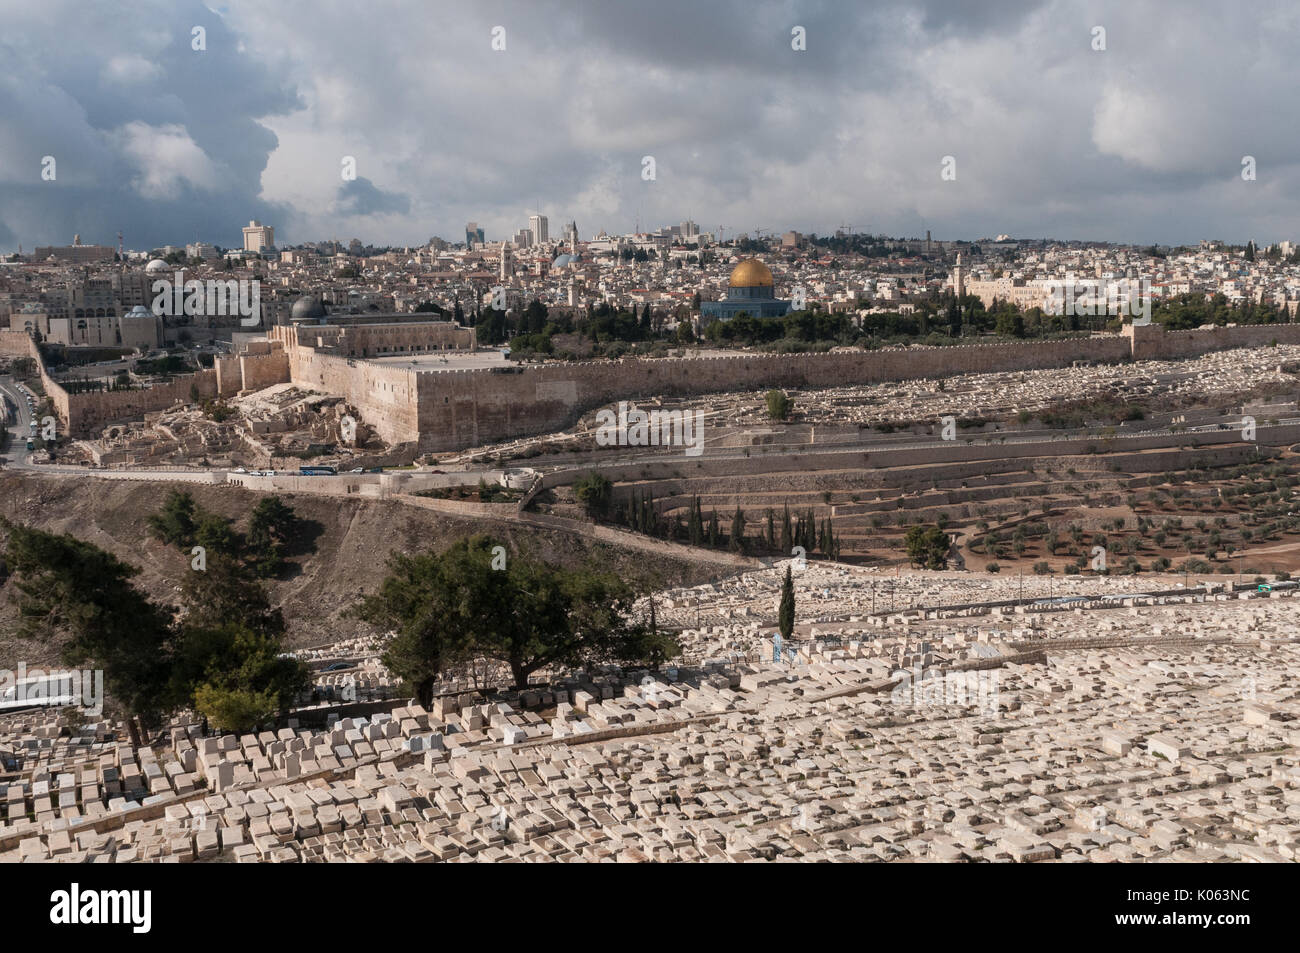 Cimitero ebraico sul Monte degli Ulivi a Gerusalemme, Israele. Questo luogo di sepoltura contiene circa 150.000 tombe ed è stato utilizzato per oltre tremila anni. Foto Stock